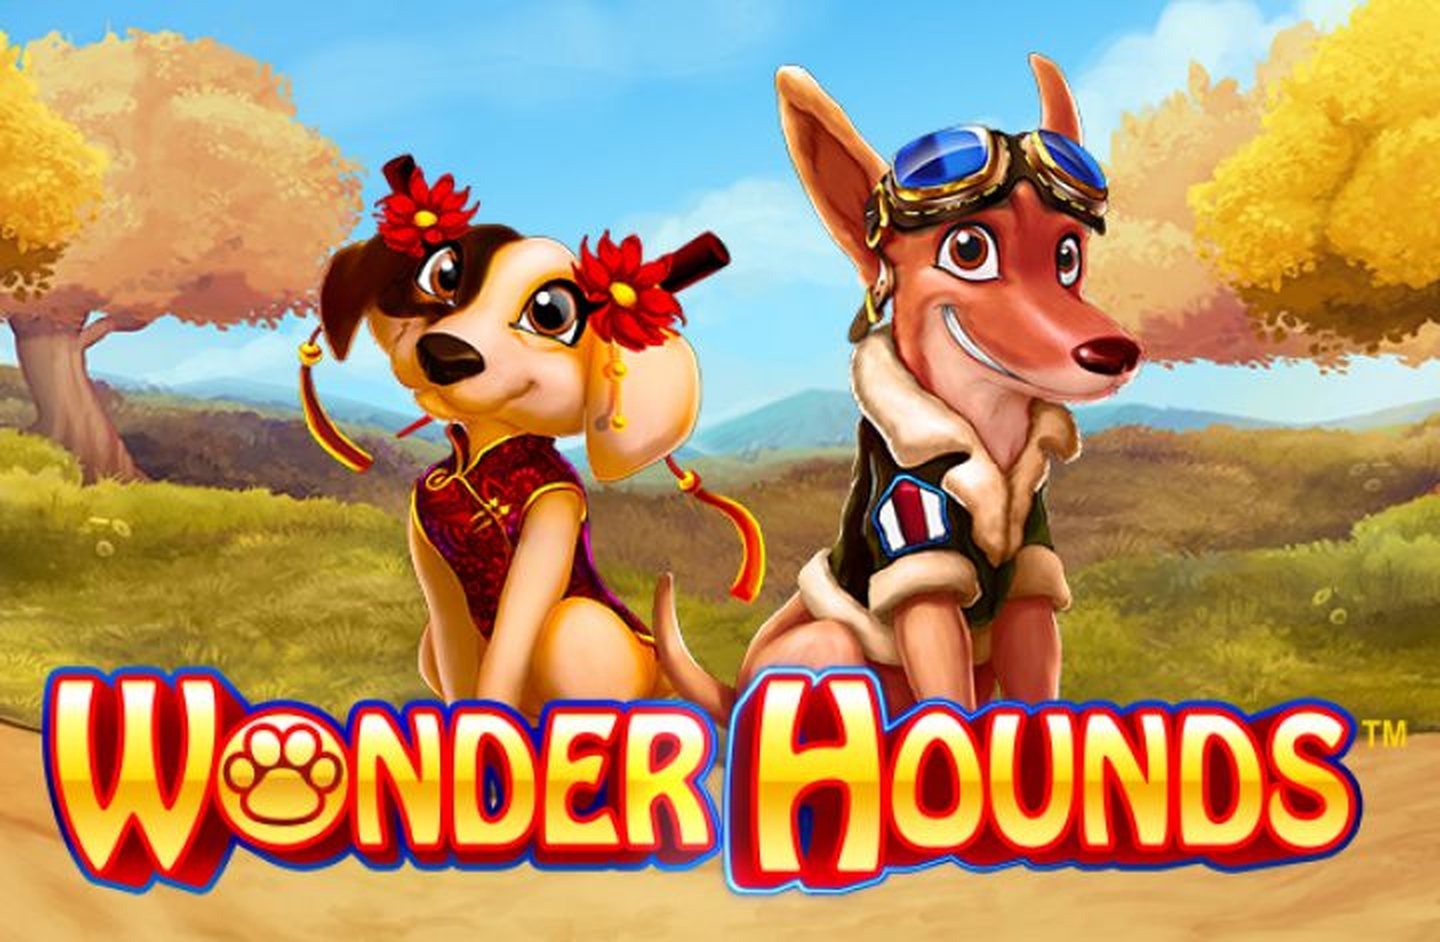 Wonder Hounds demo